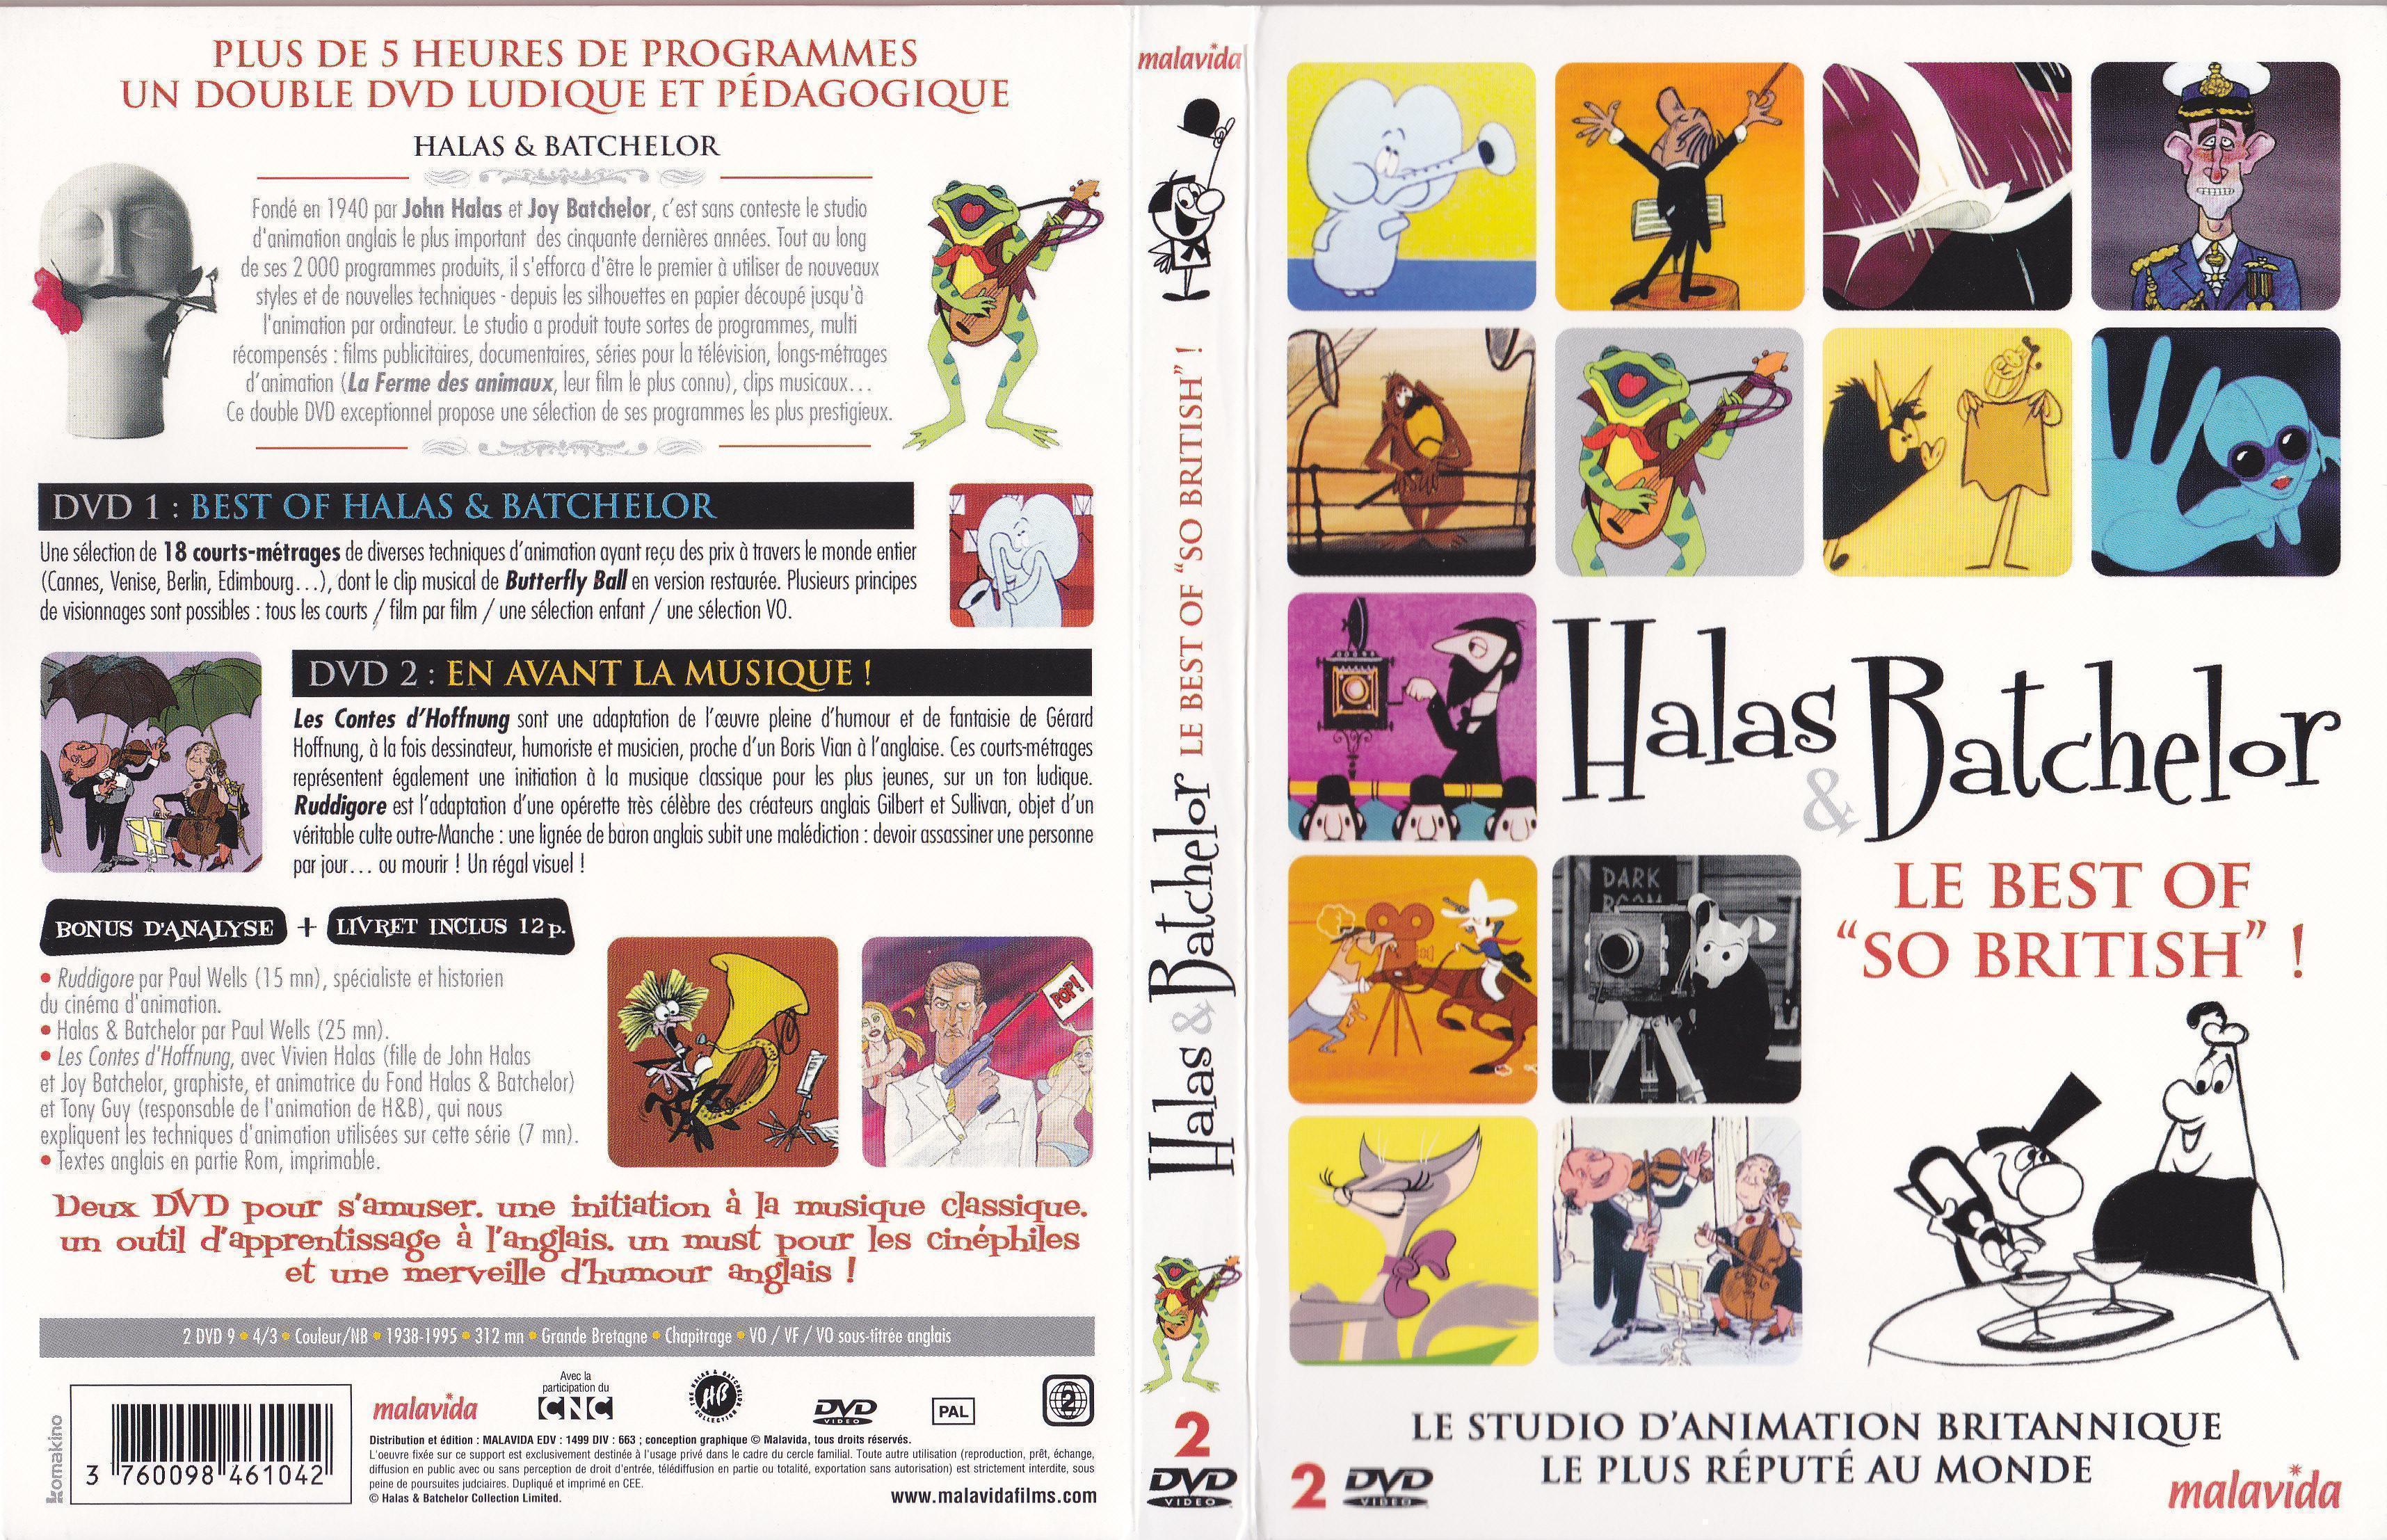 Jaquette DVD Halas & Batchelor - Le Best Of -So British